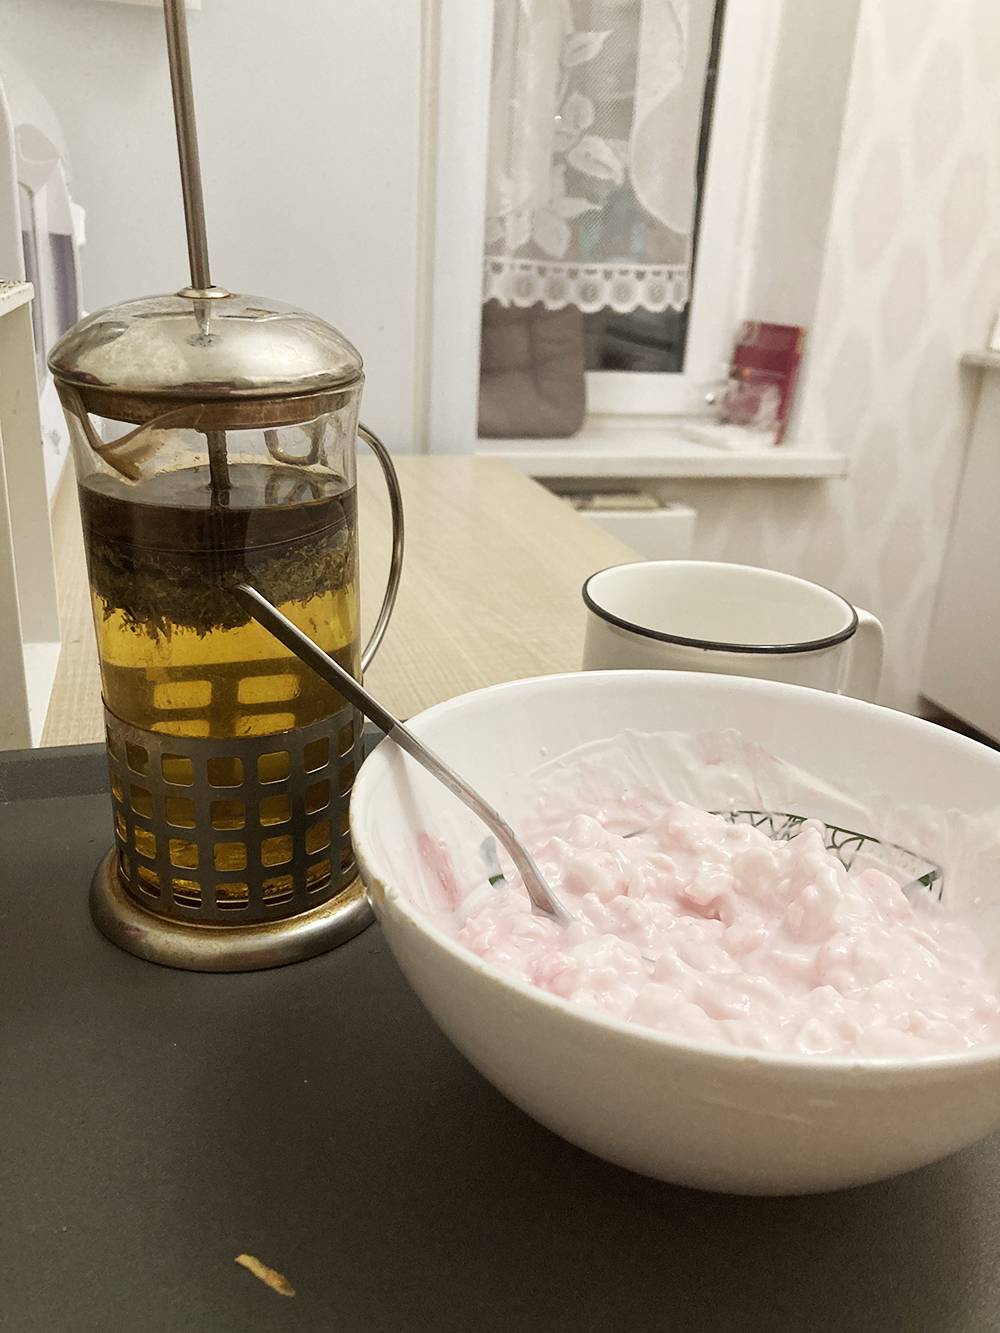 Вечерний перекус: творог с обезжиренным йогуртом и ромашковый чай